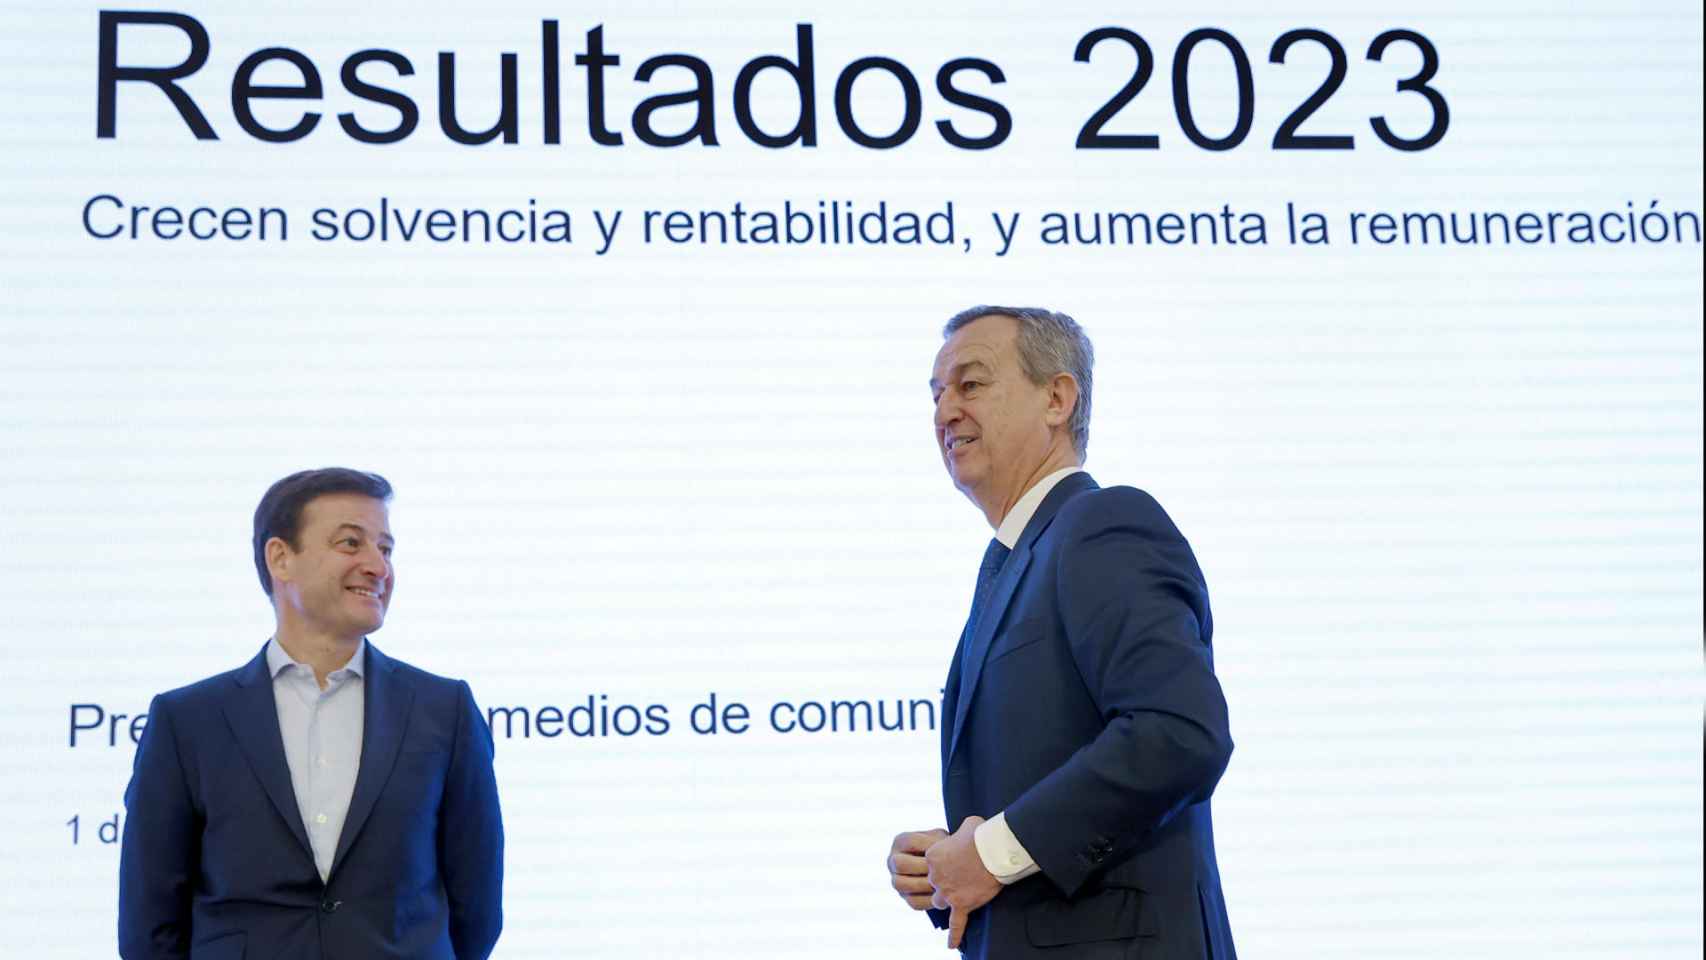 César González-Bueno, consejero delegado de Sabadell, y Leopoldo Alvear, director financiero del banco,  durante la rueda de prensa de presentación de los resultados del ejercicio 2023.